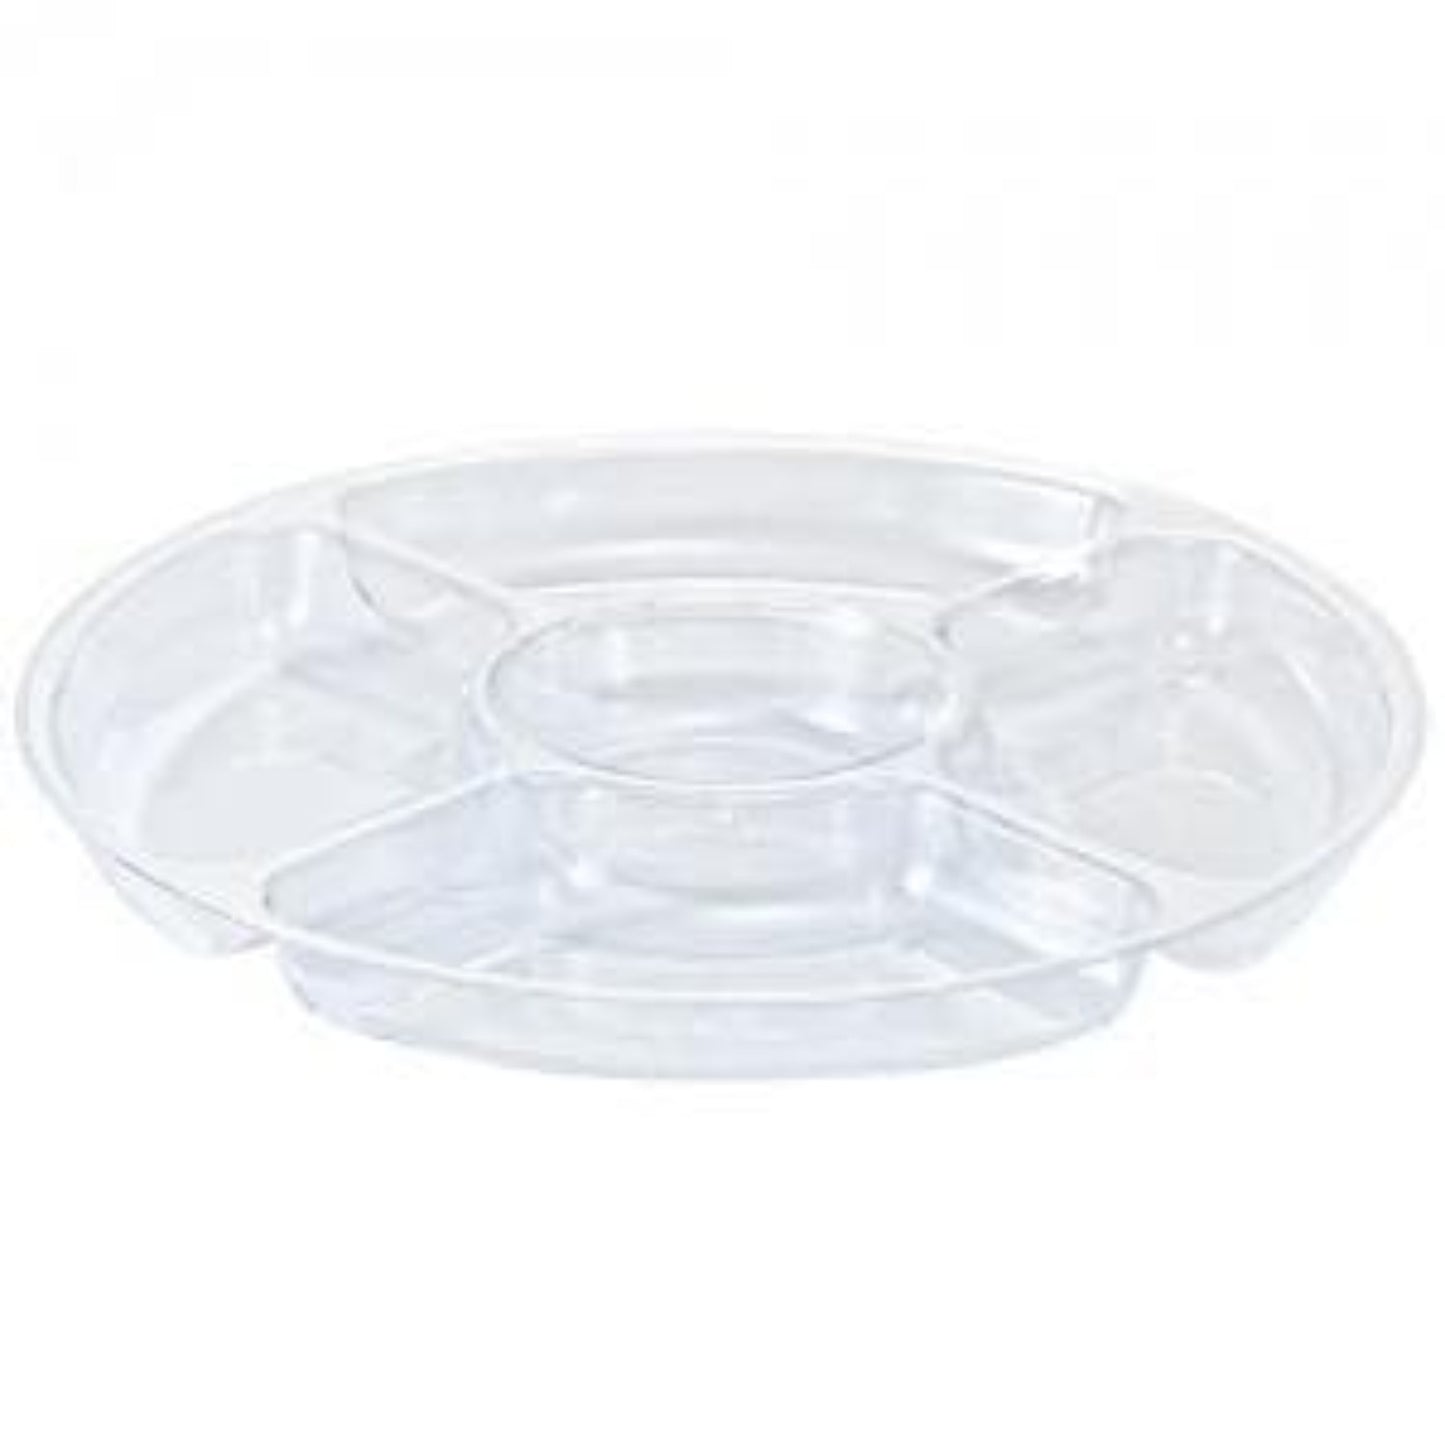 https://onlyonestopshop.com/cdn/shop/products/Clear-5-Compartment-12--Plastic-Platter-Party-Dimensions-1603926887.jpg?v=1608107060&width=1445